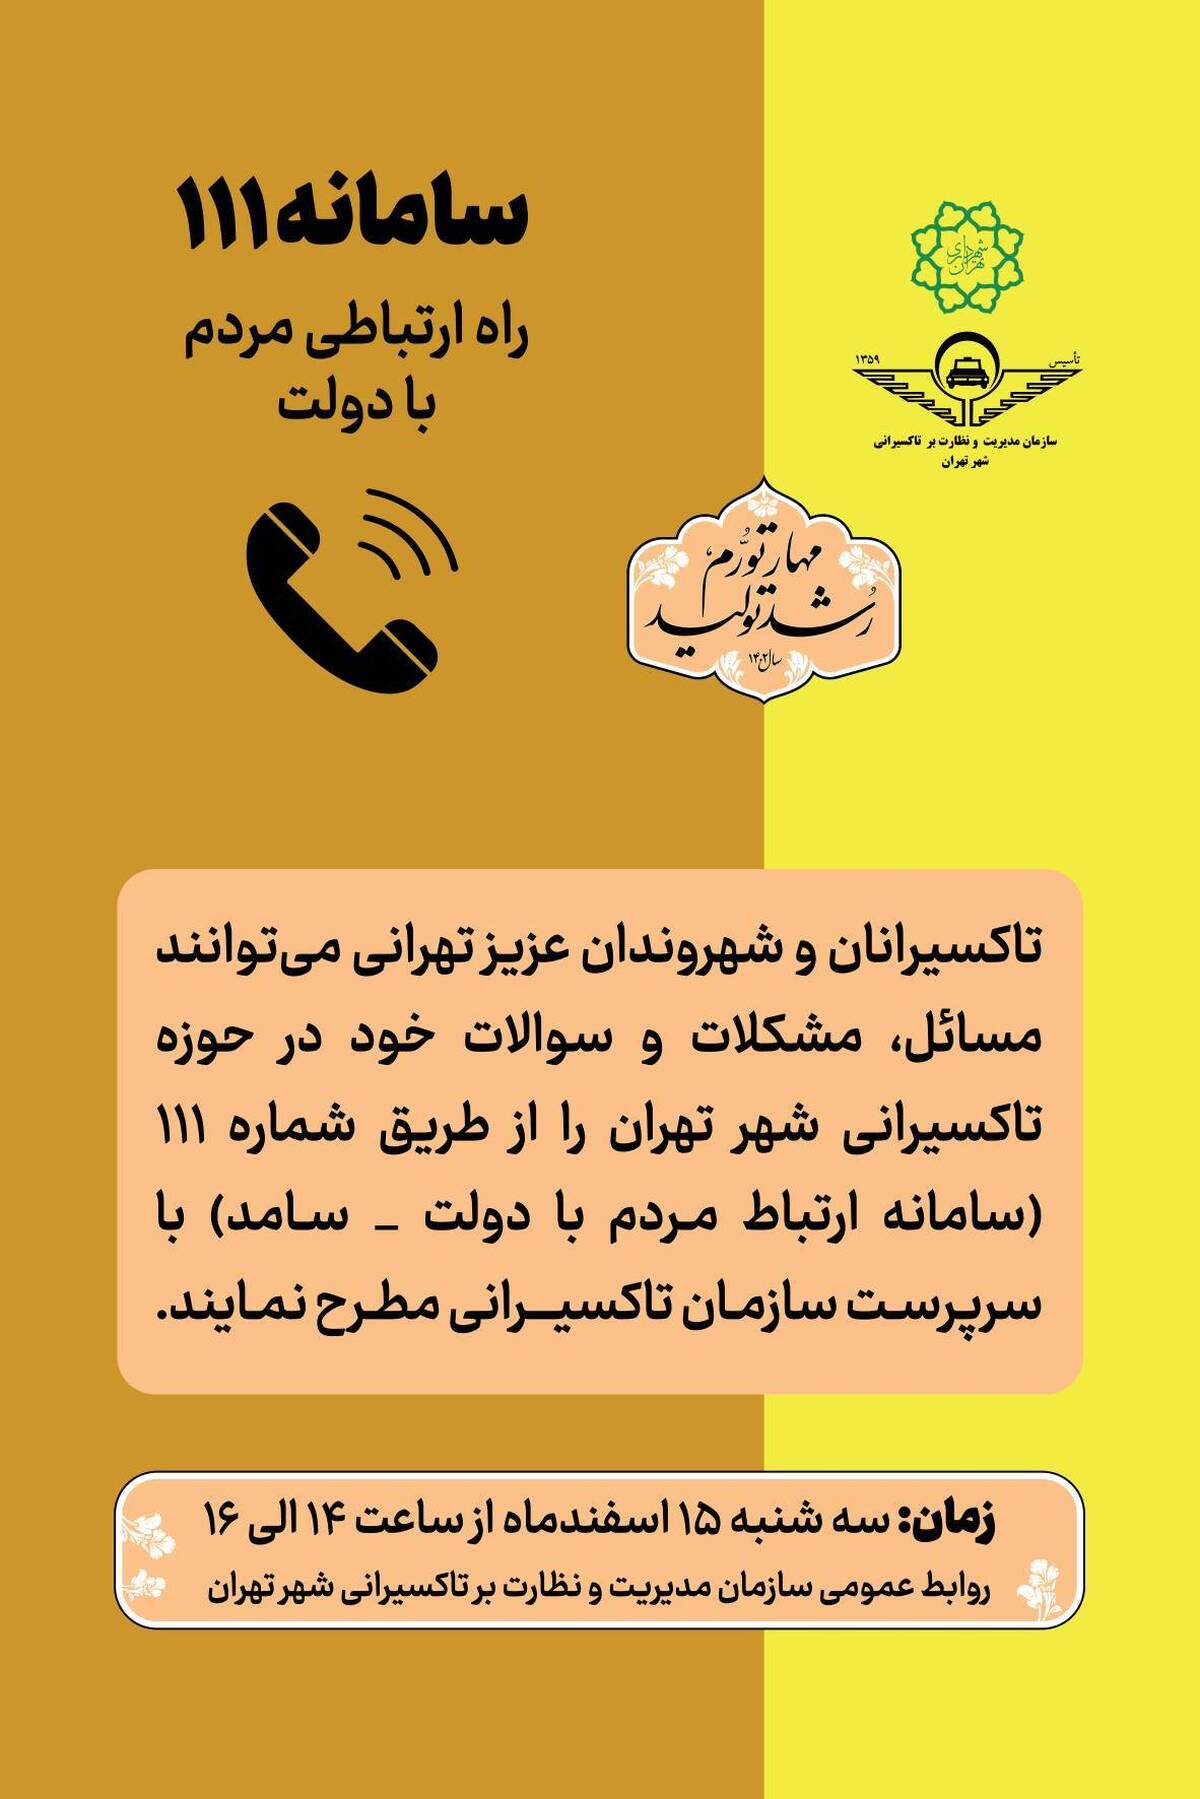 پاسخگویی سازمان تاکسیرانی به سوالات تاکسیرانان و شهروندان تهرانی در سامانه ۱۱۱